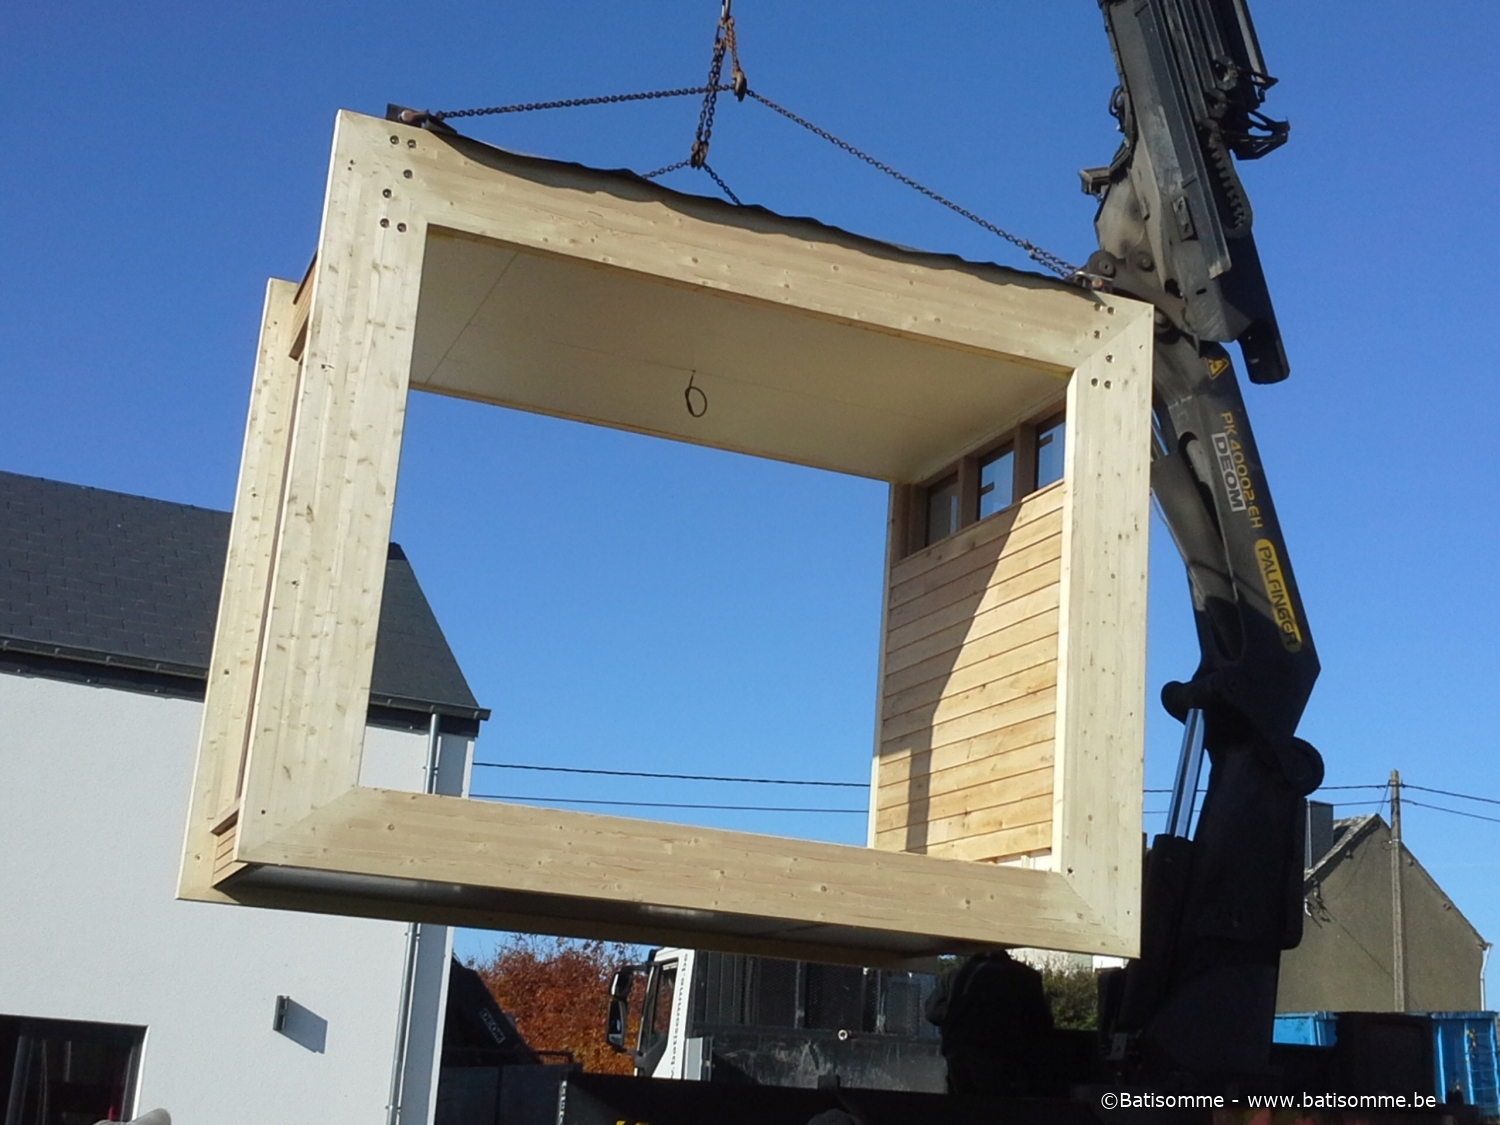 Constructions modulaires - Tiny Houses - cabanes en bois